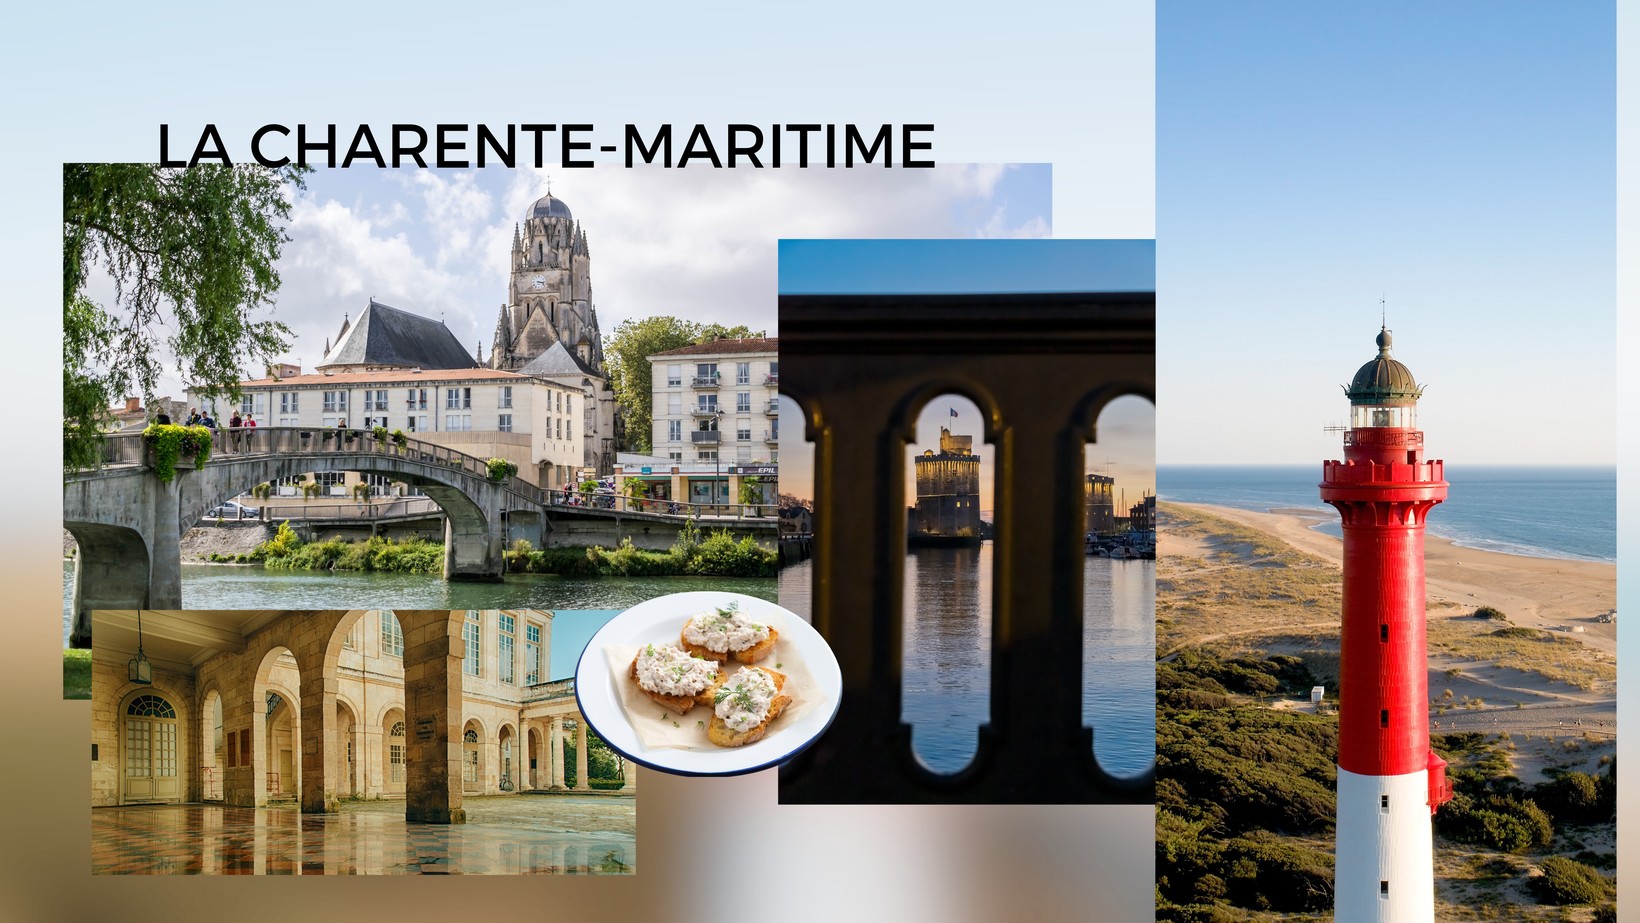 Découvrez la Charente-Maritime lors d'un City Break exclusif entre charme, gastronomie et immobilier de luxe